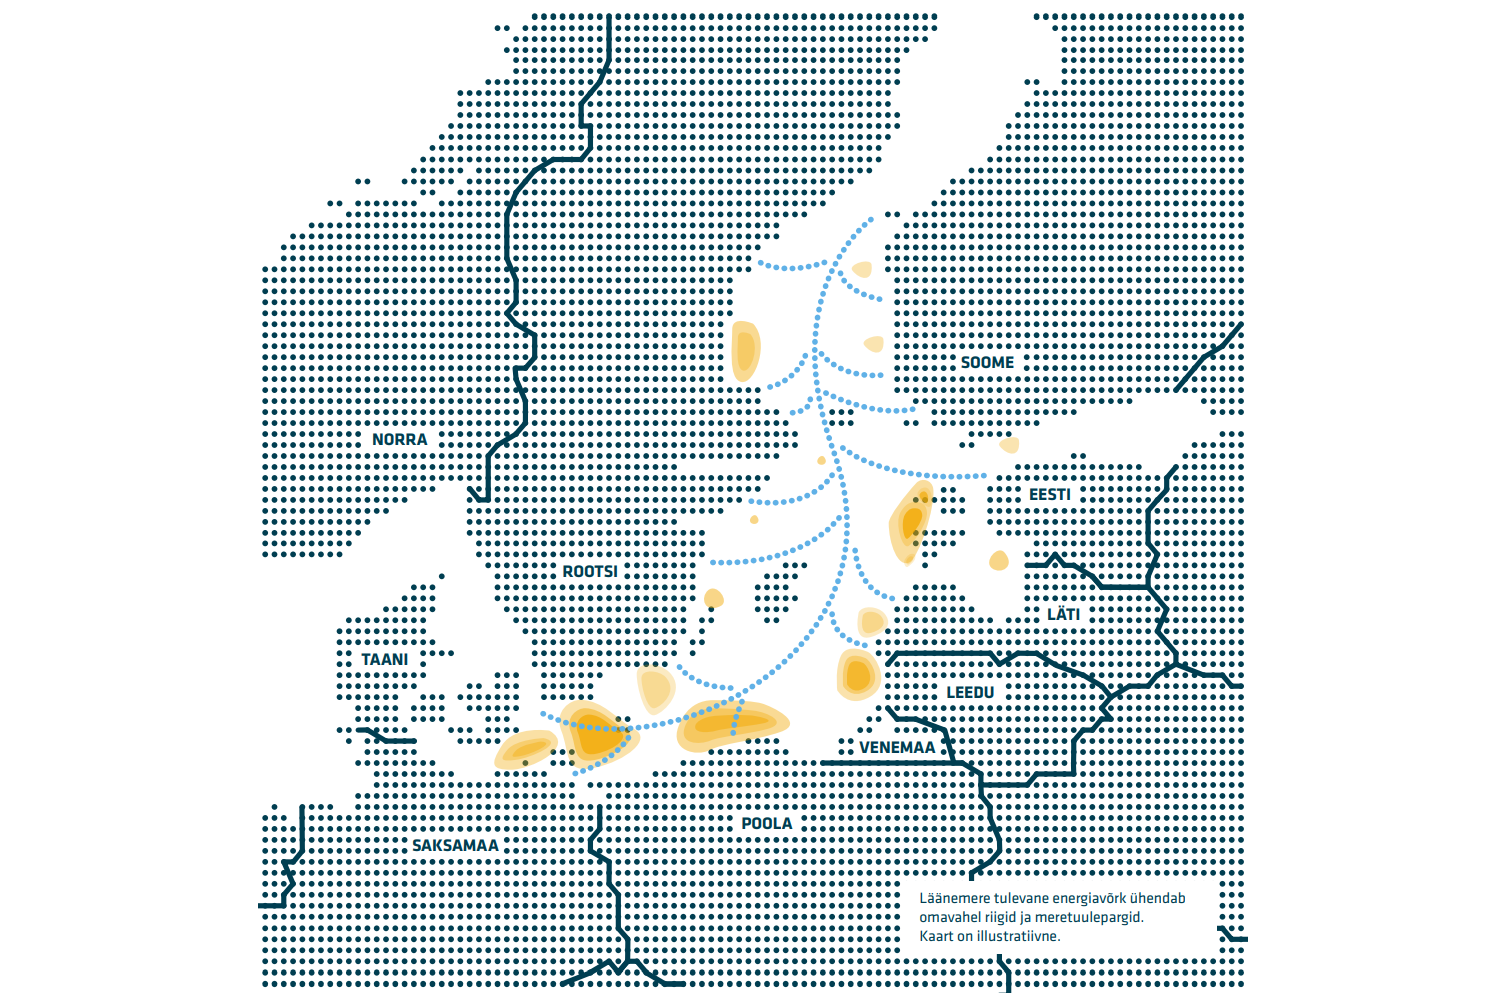 Läänemere energiavõrk